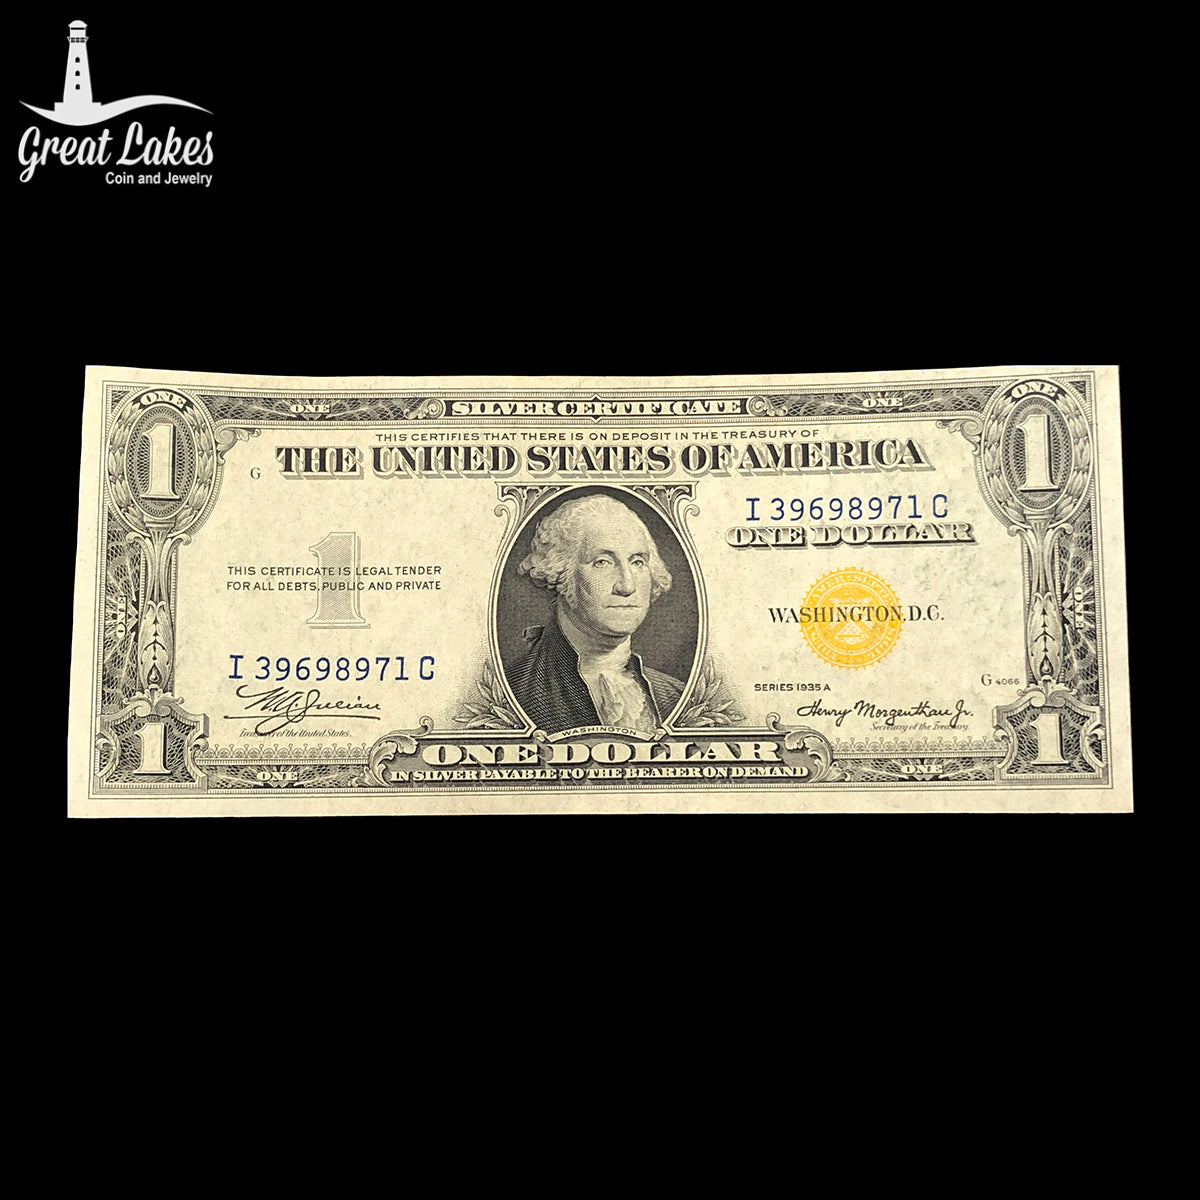 1935-A $1 North African Note (CU)